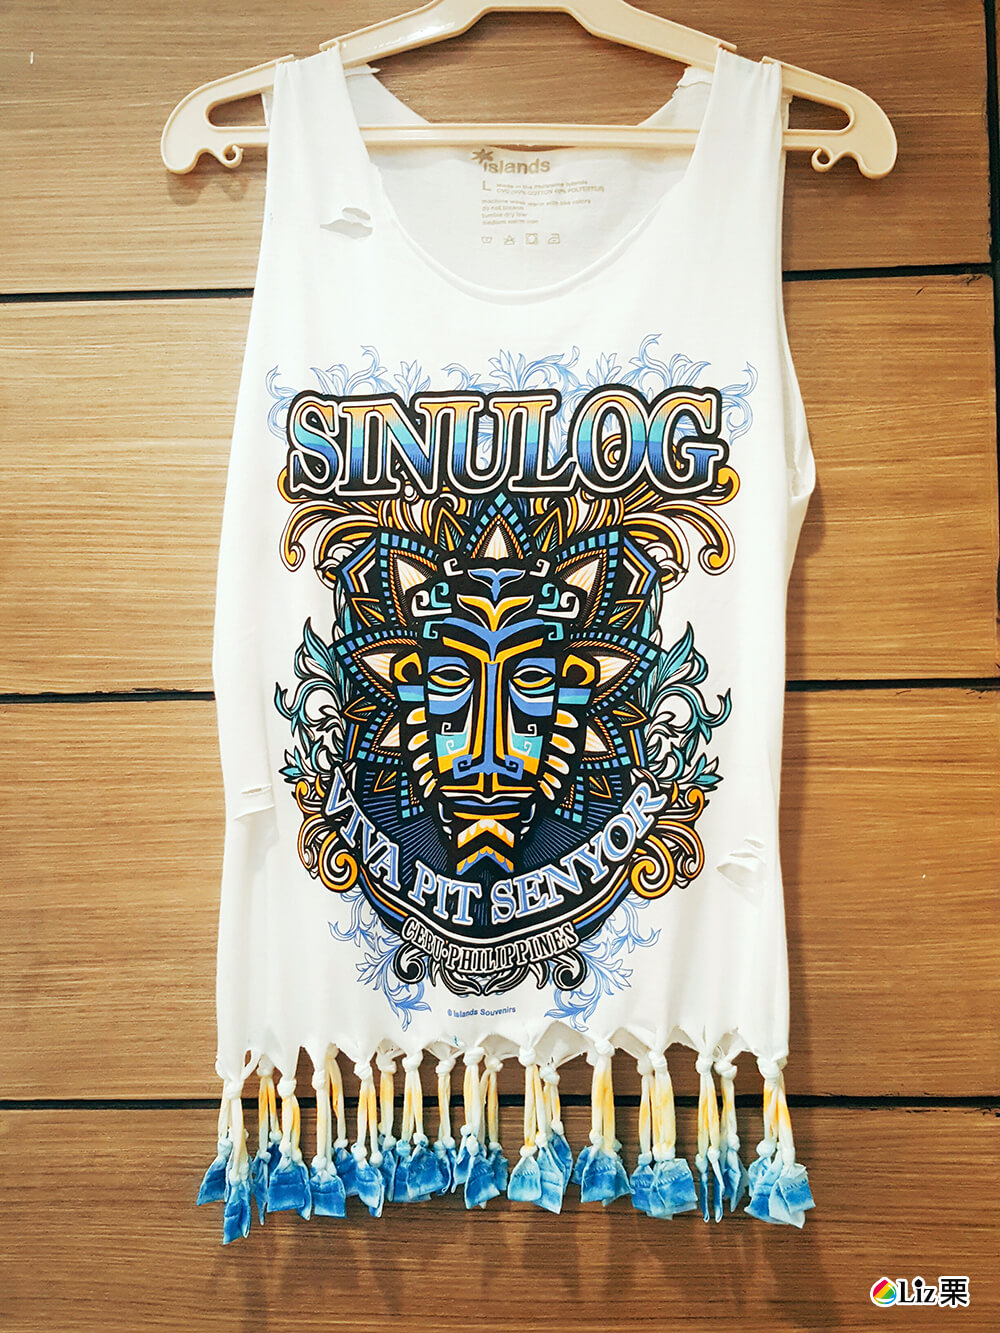 Sinulog T-shirt